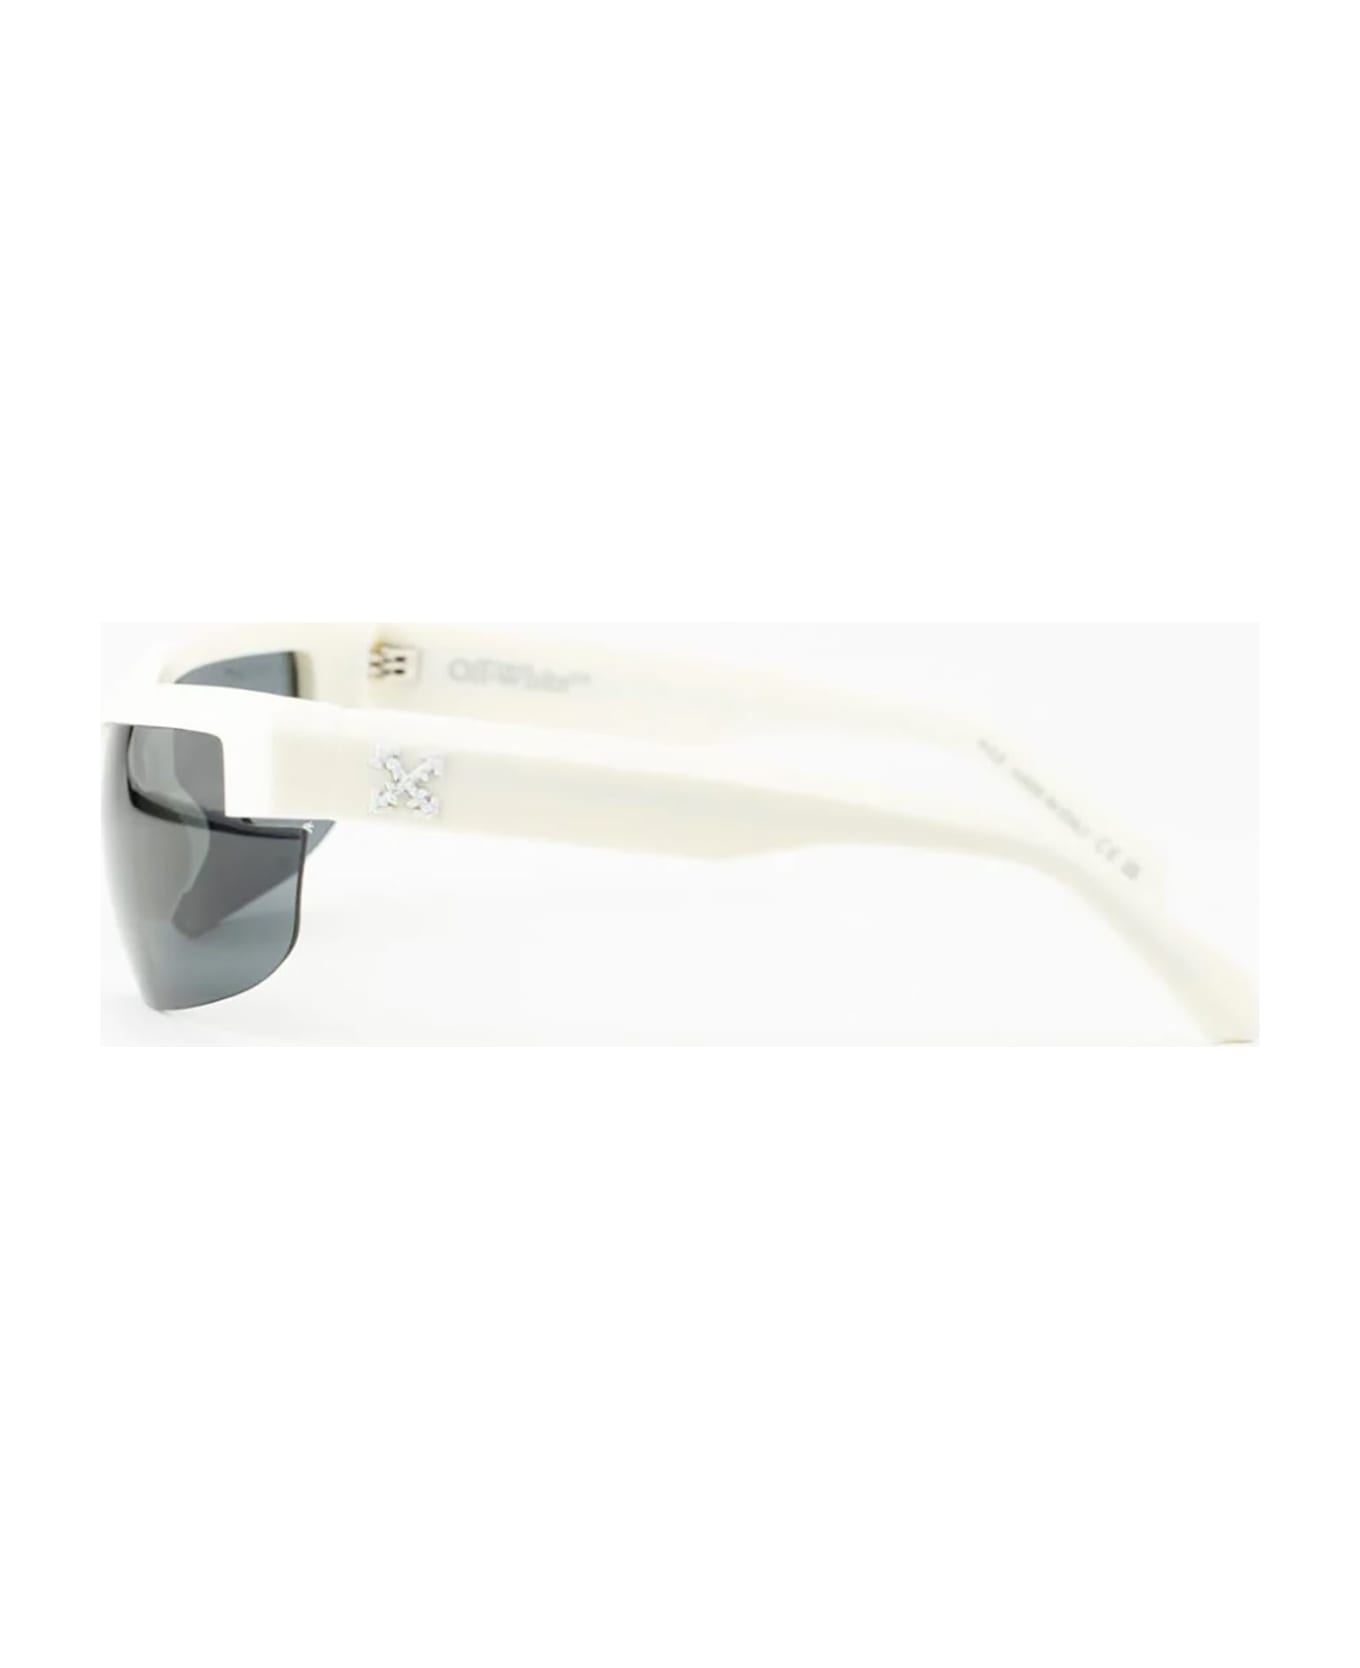 Off-White TOLEDO SUNGLASSES Sunglasses - White